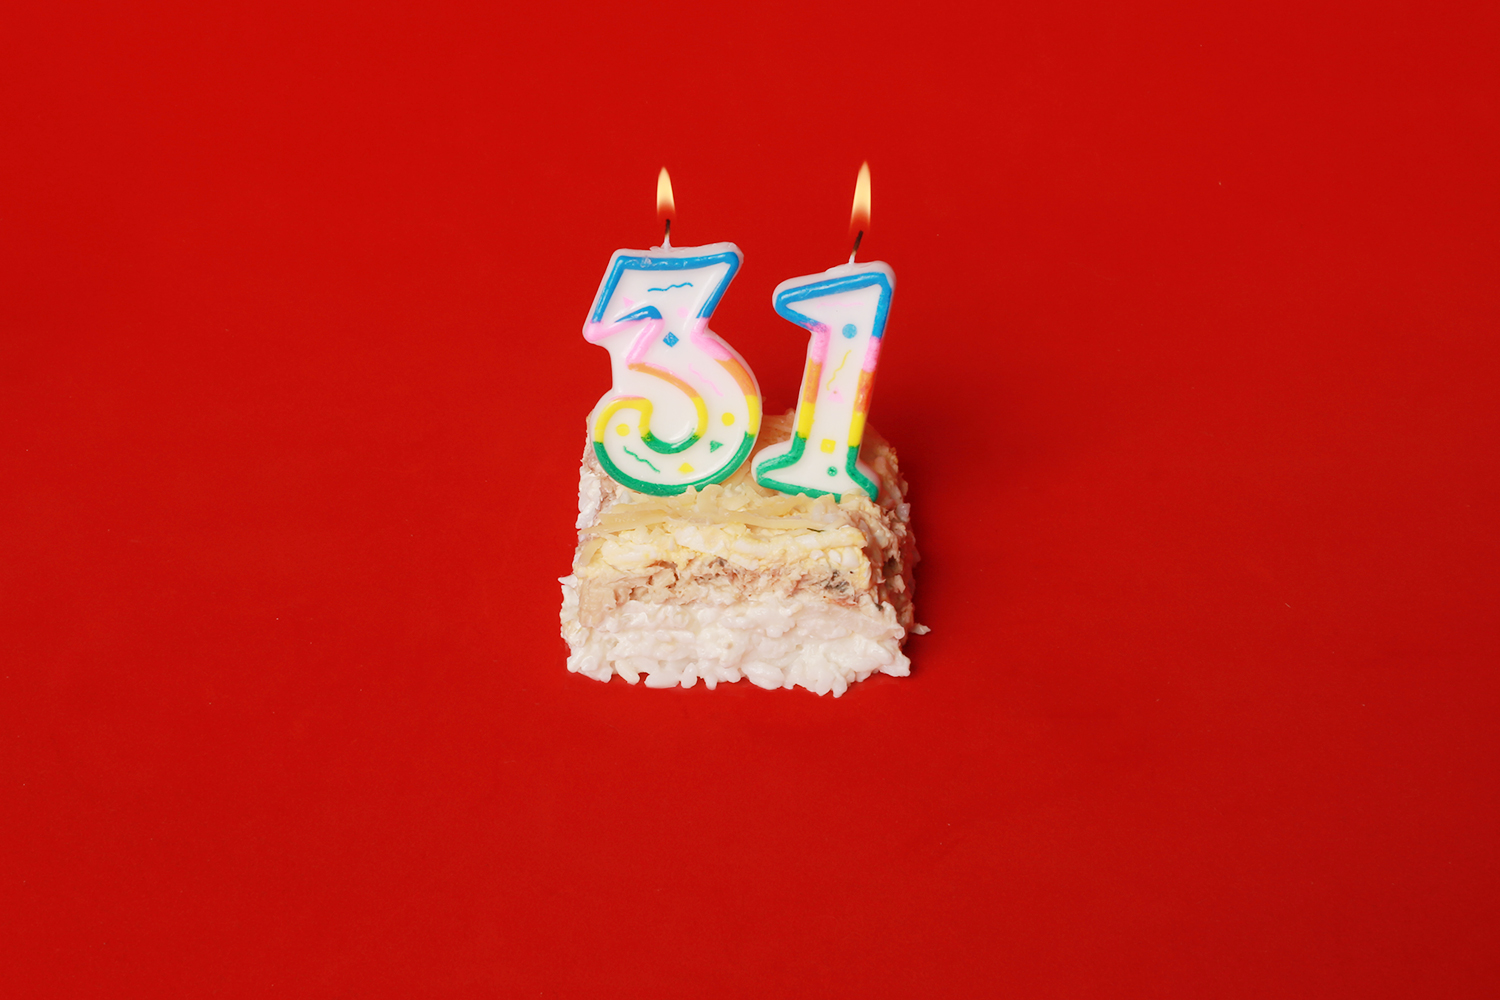 31 год день рождения: картинки для поздравлений